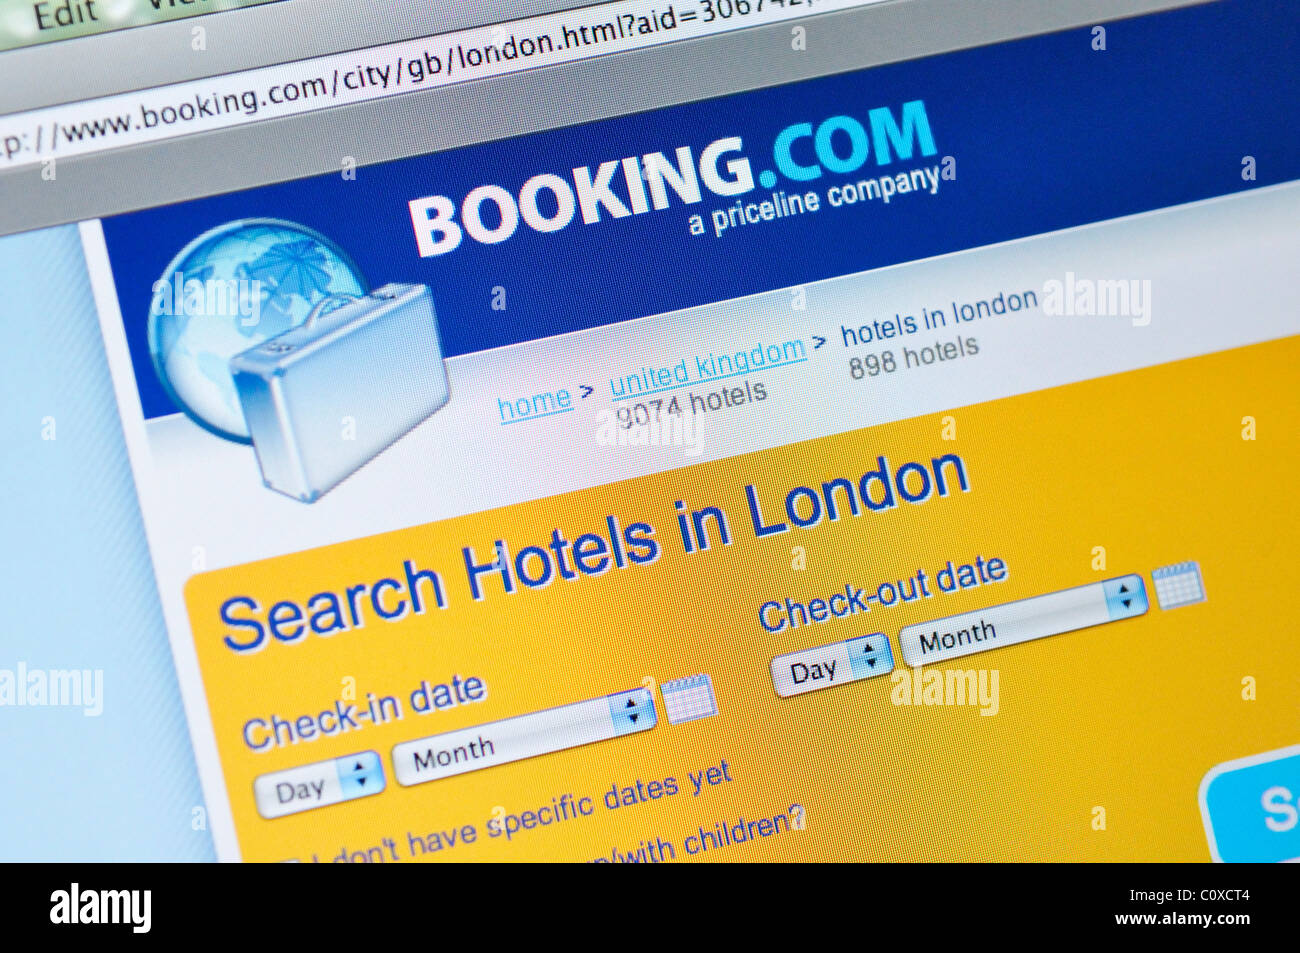 Booking.com website Stock Photo